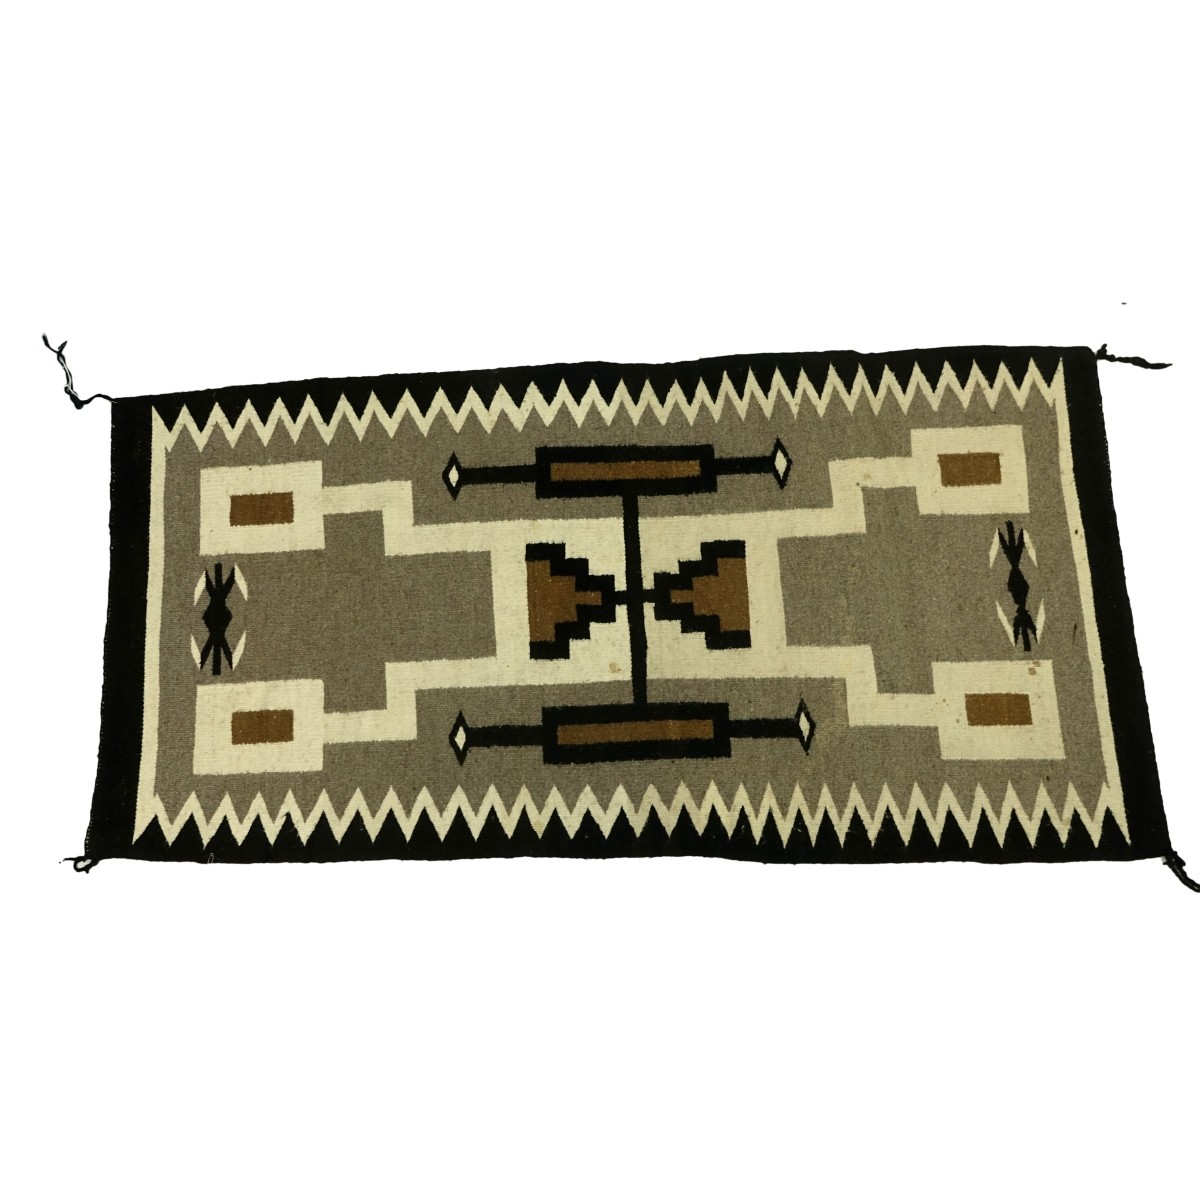 Navajo Wool Storm Pattern Blanket